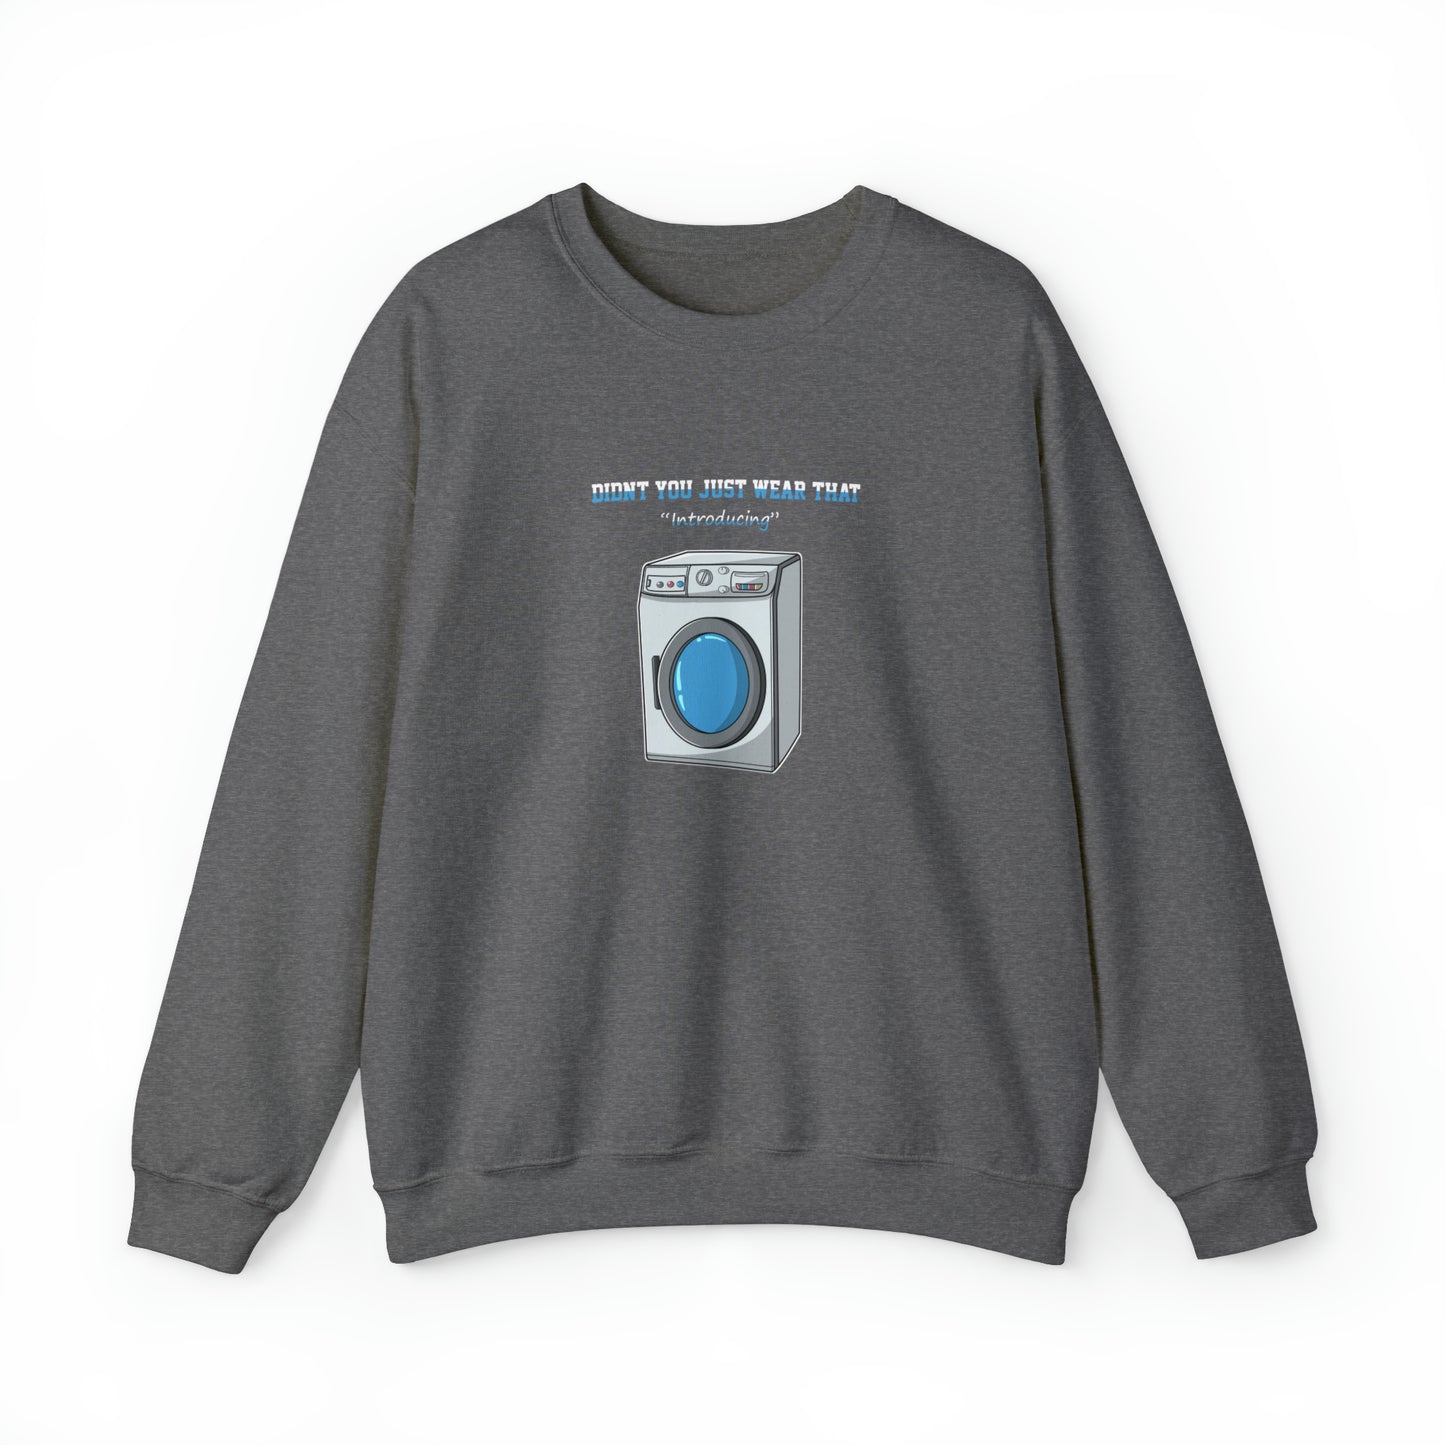 Custom Parody Crewneck Sweatshirt, Washing machine Design